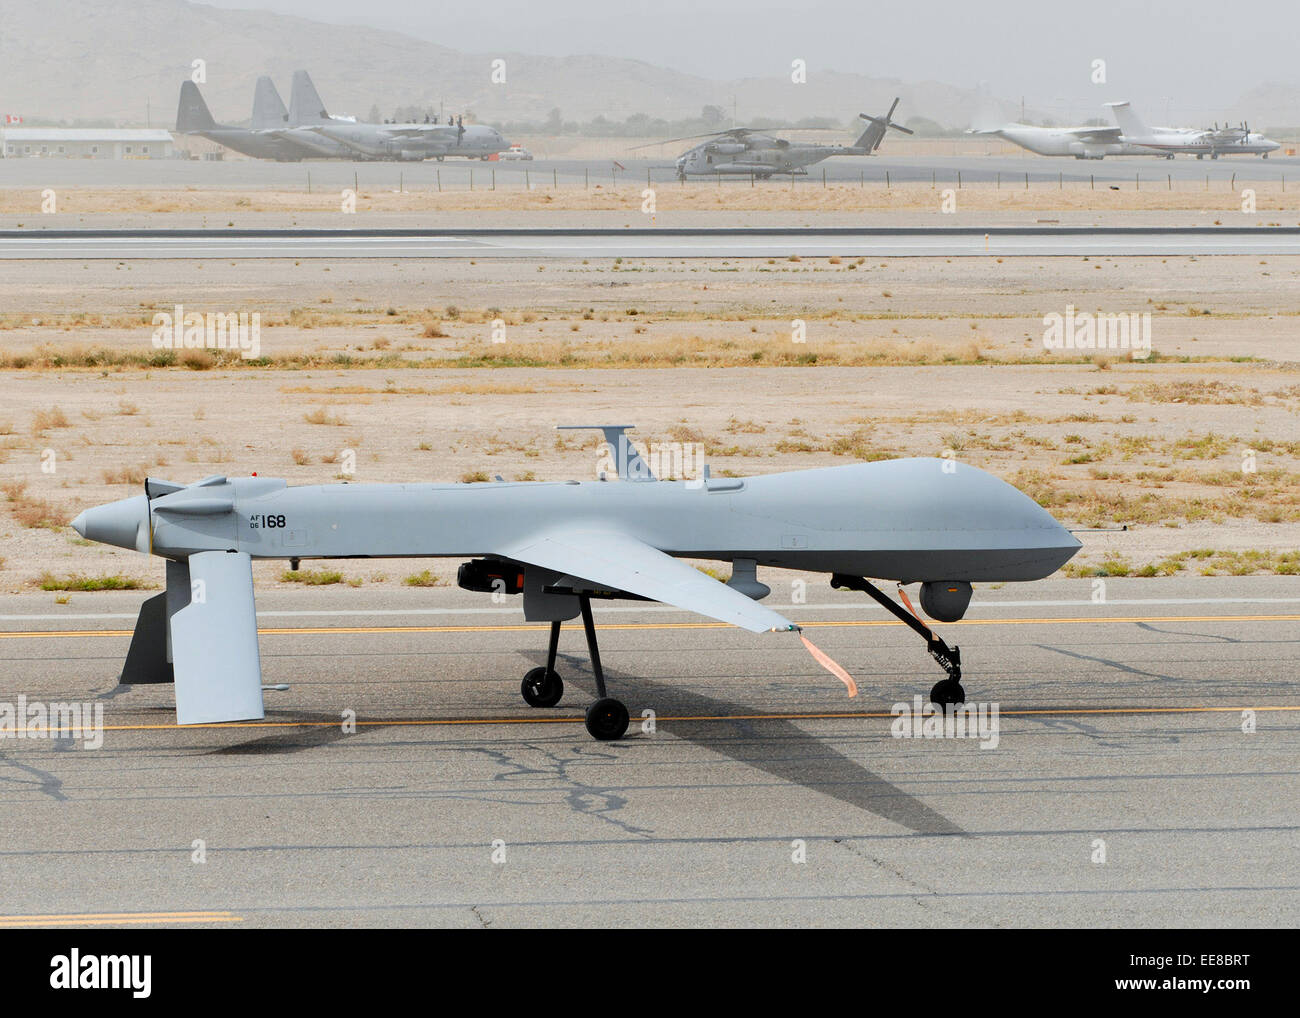 MQ-1 Predator UAV (unmanned aerial vehicle) sur la piste de la Base aérienne de Bagram en Afghanistan, de l'opération Enduring Freedom. Voir la description pour plus d'informations. Banque D'Images